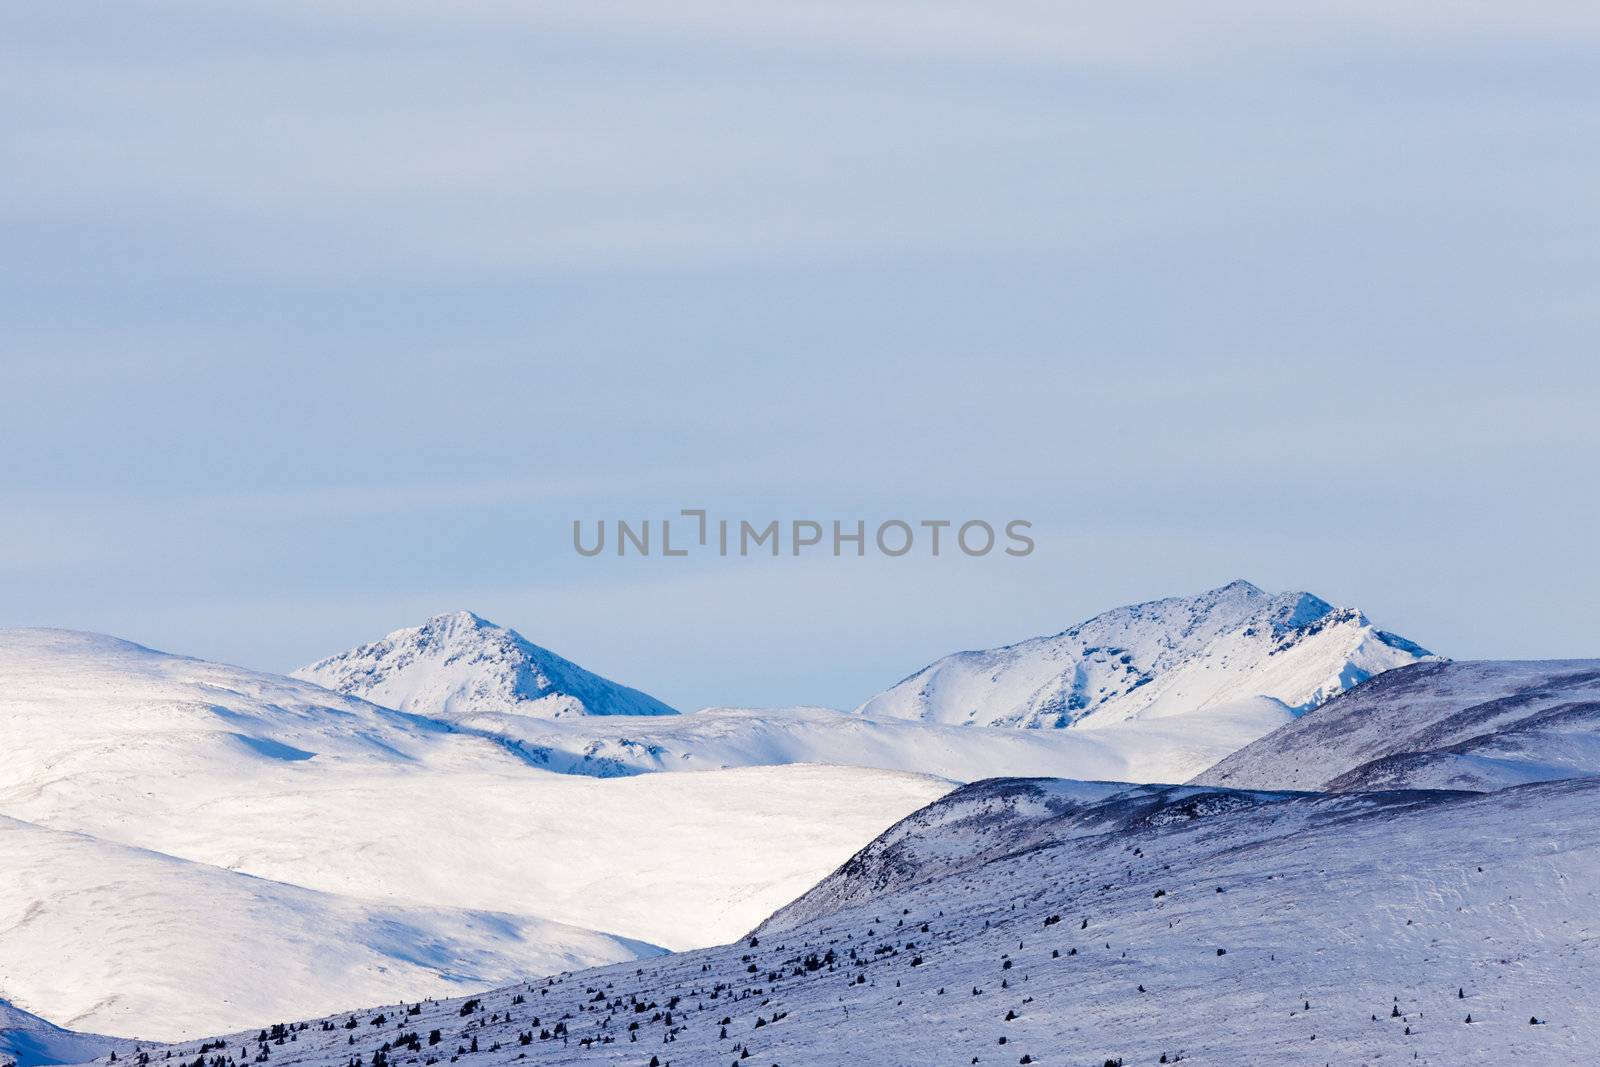 Alpine tundra in winter, Yukon Territory, Canada.